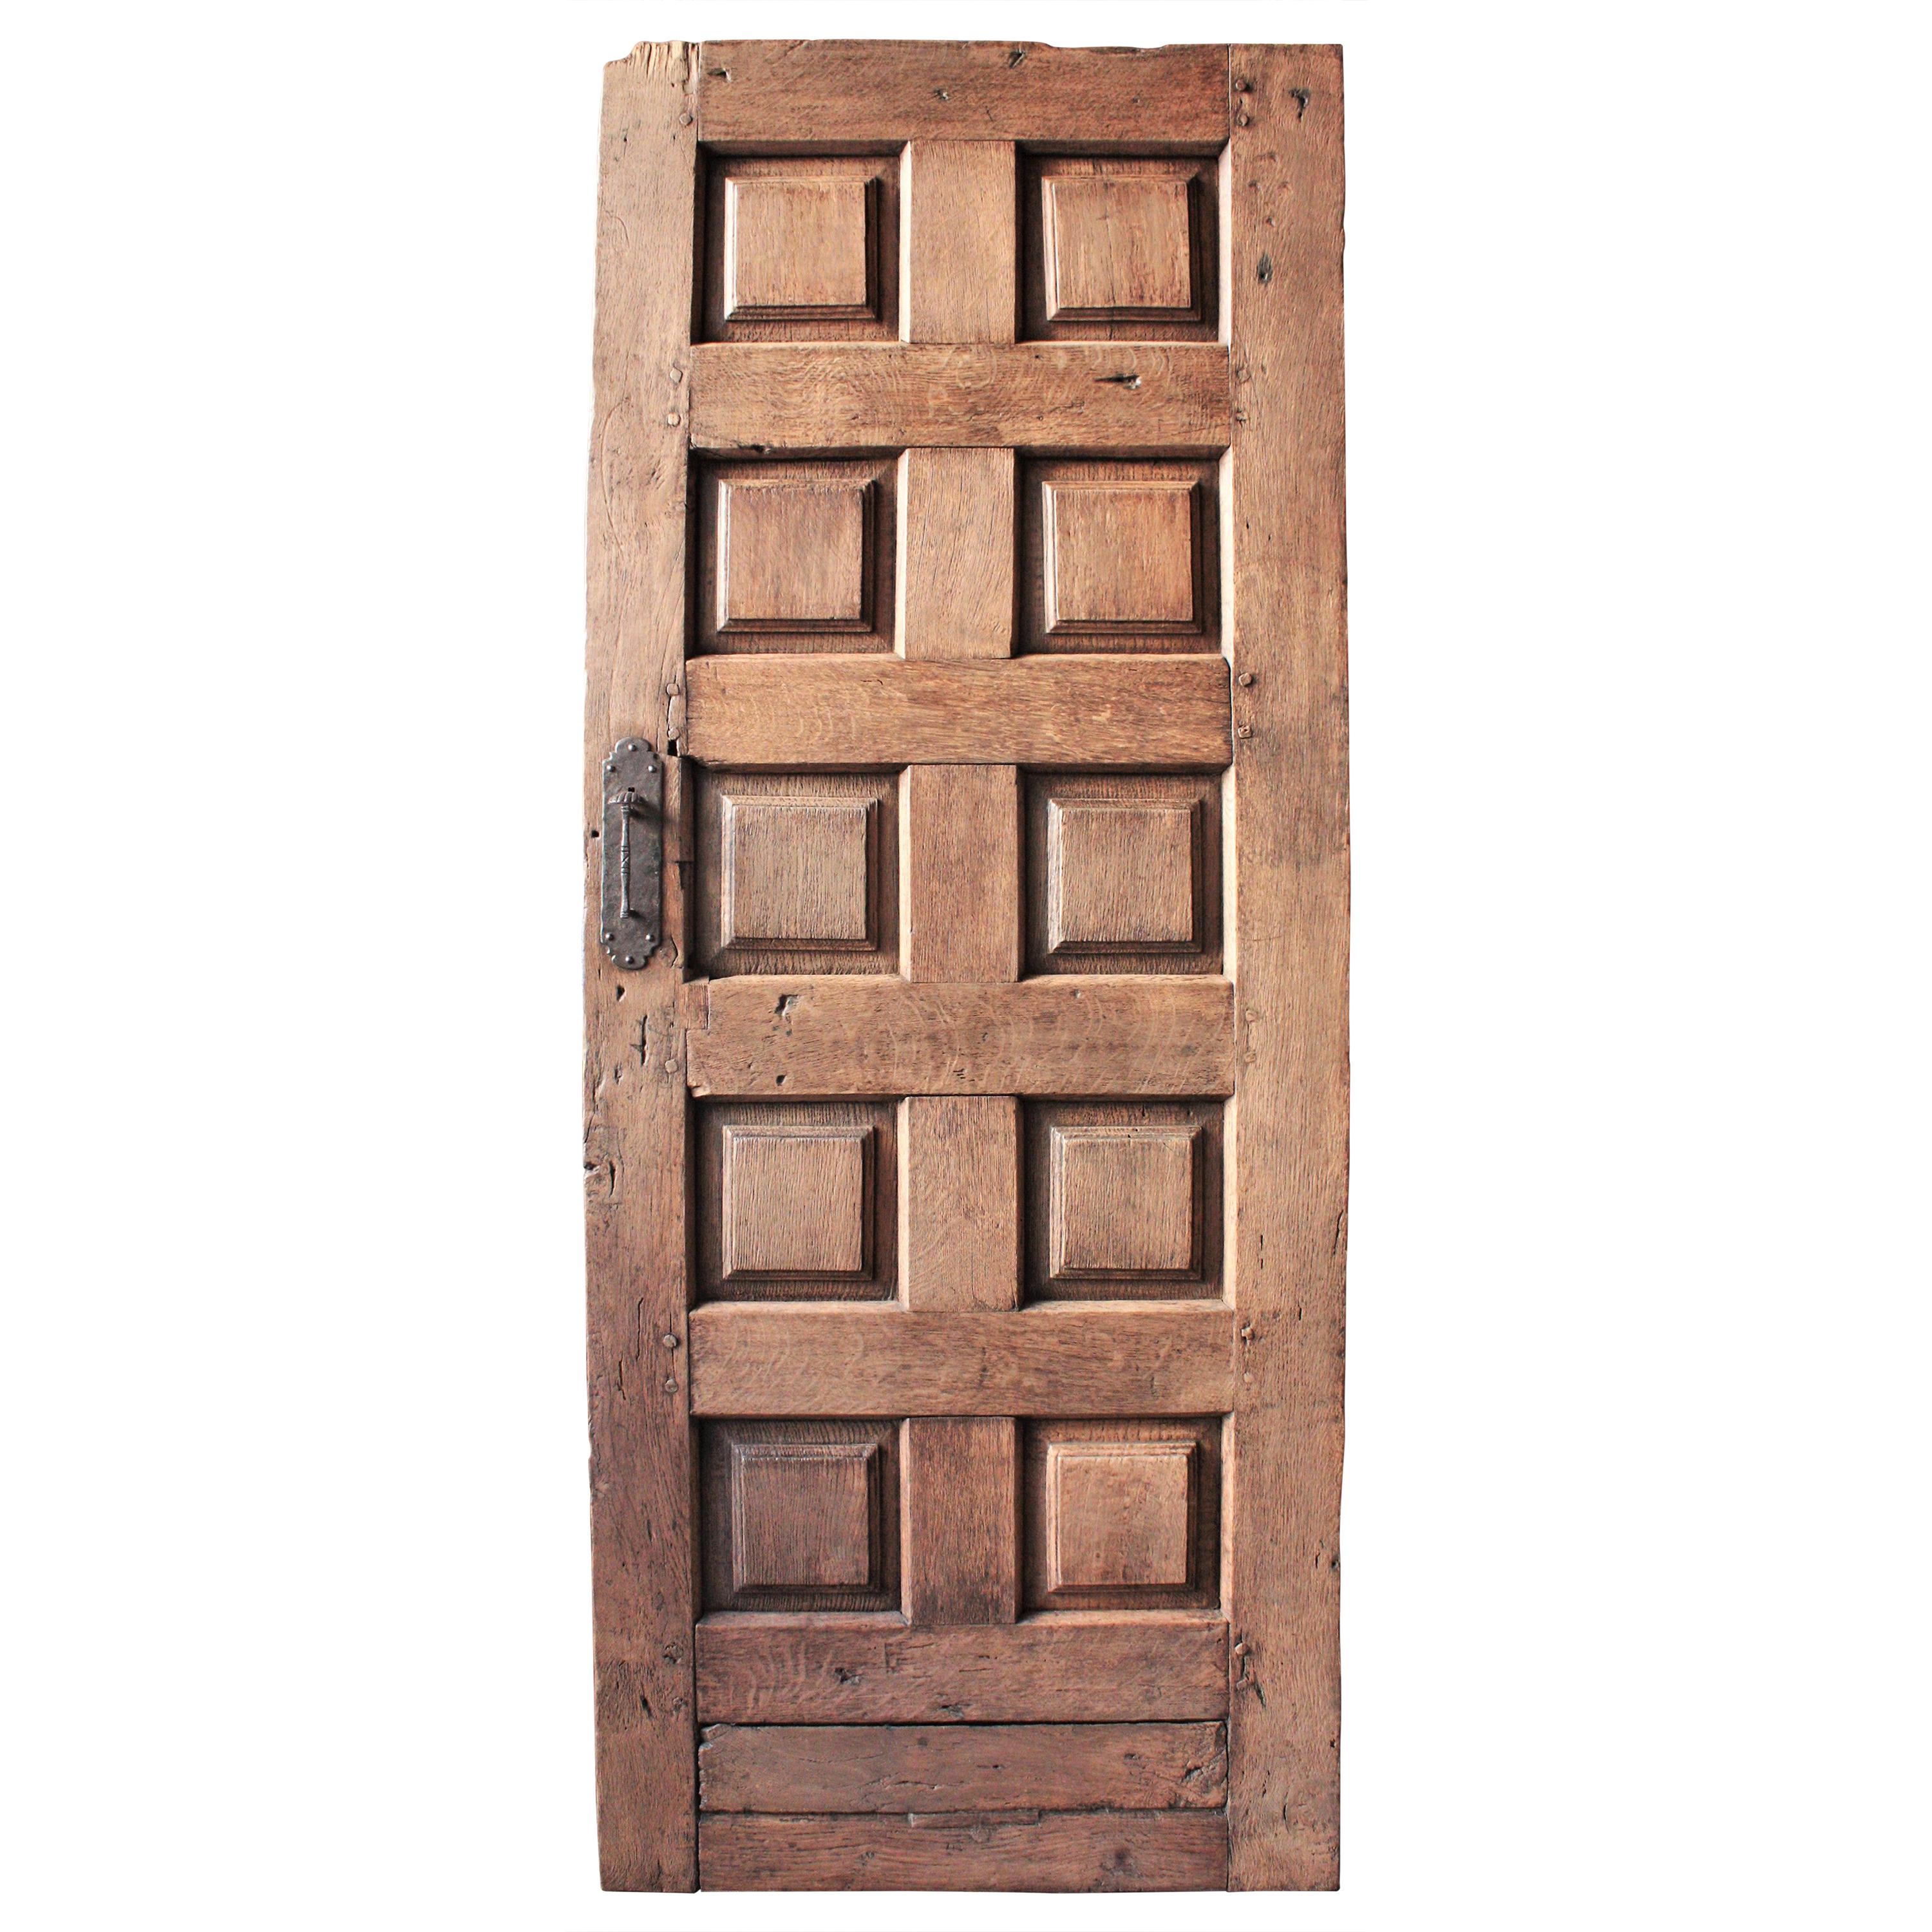 Porte rustique espagnole avec poignée originale en fer forgé à la main